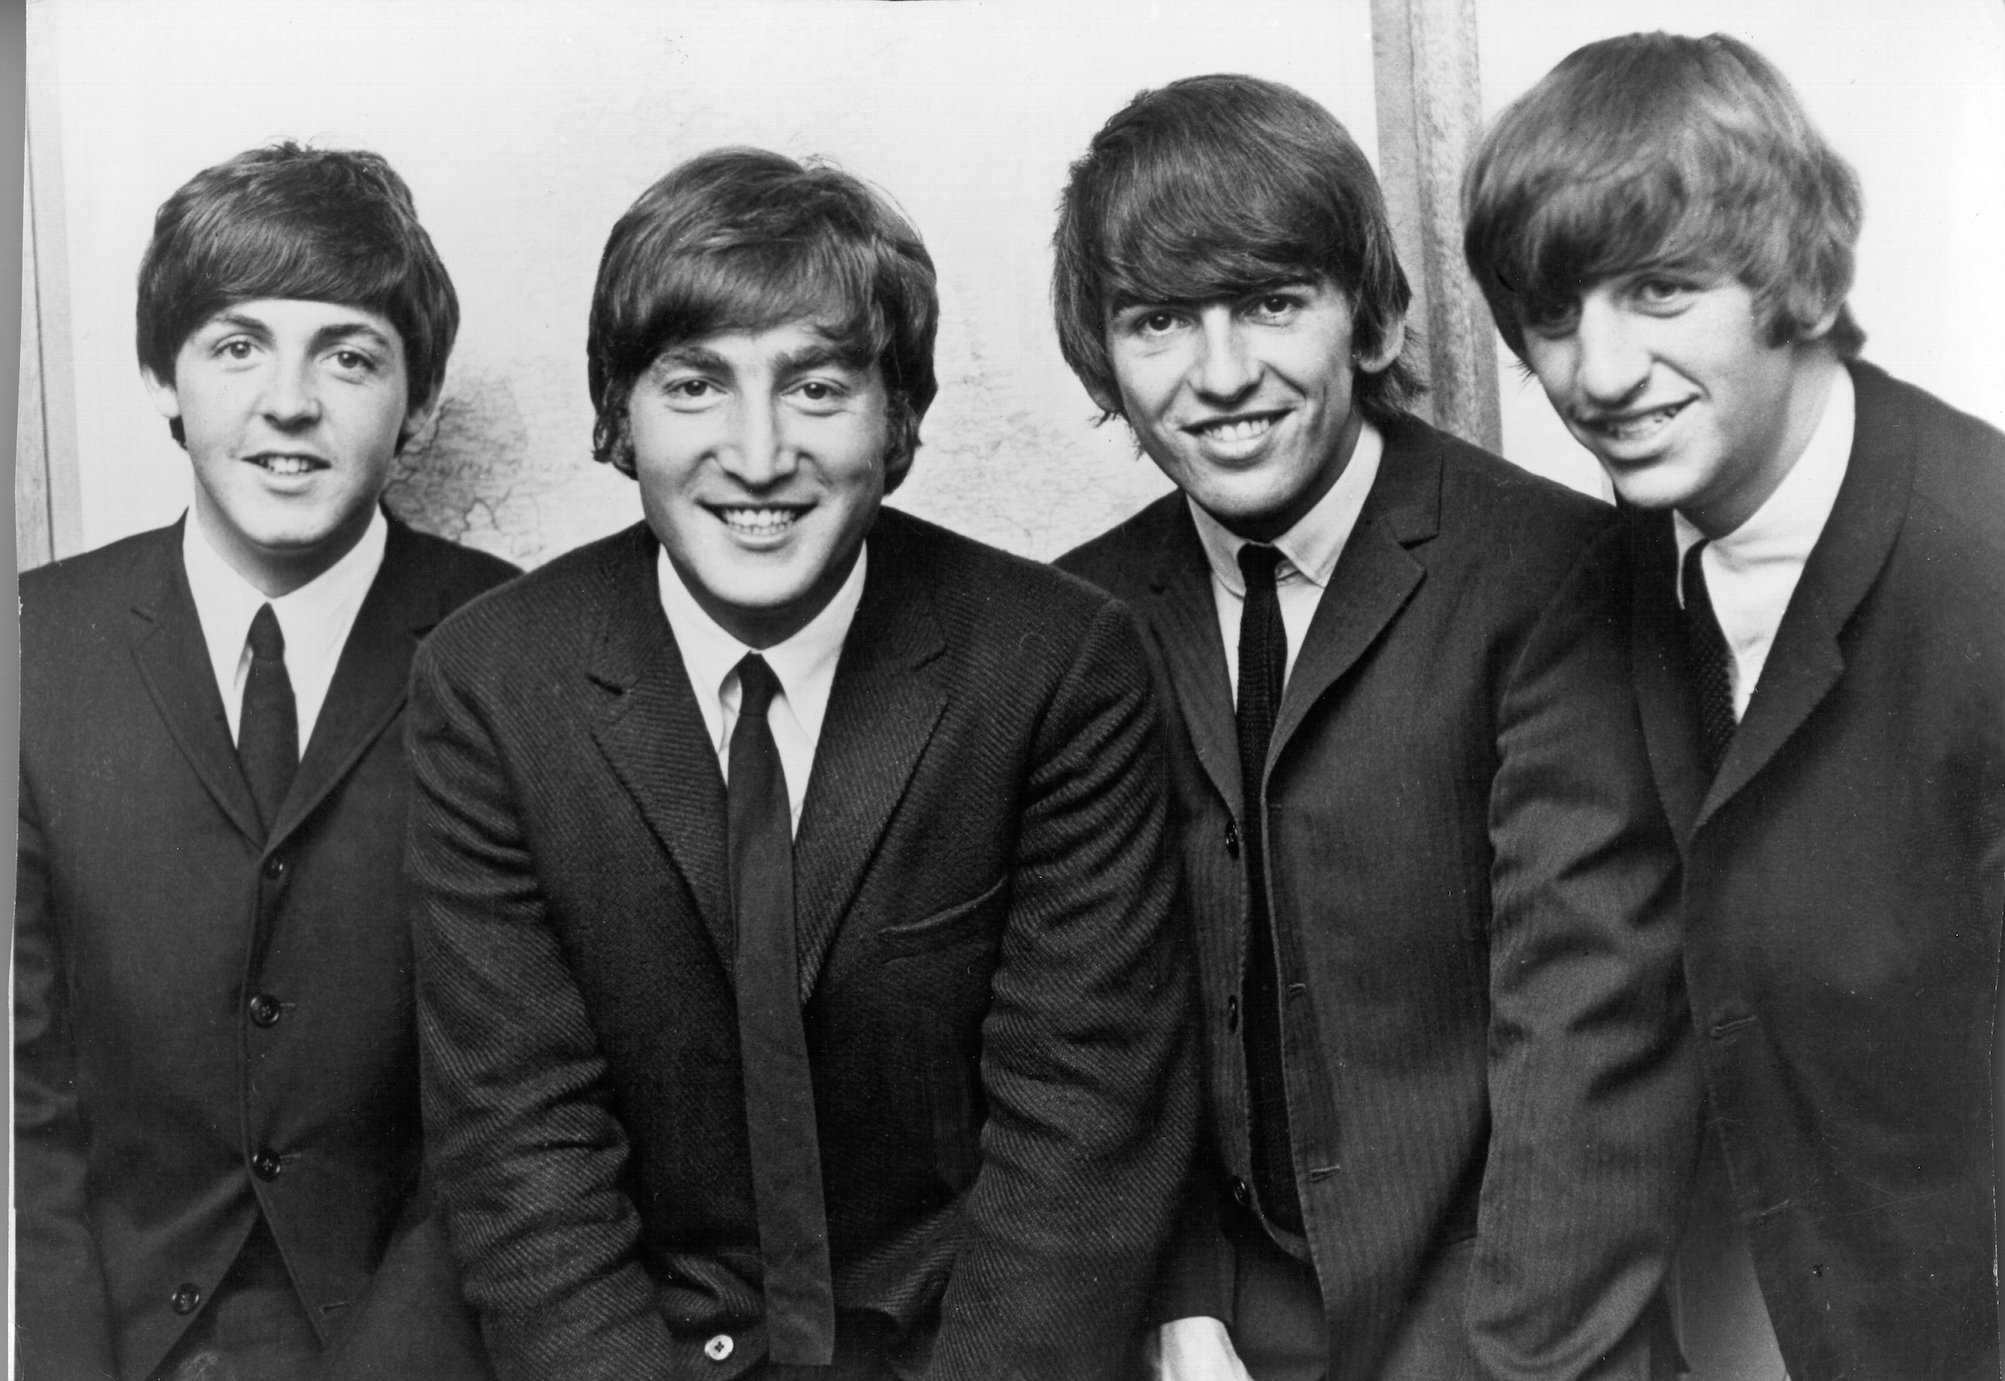 The 3 Songs Each Member of The Beatles Performed in Tribute of John Lennon